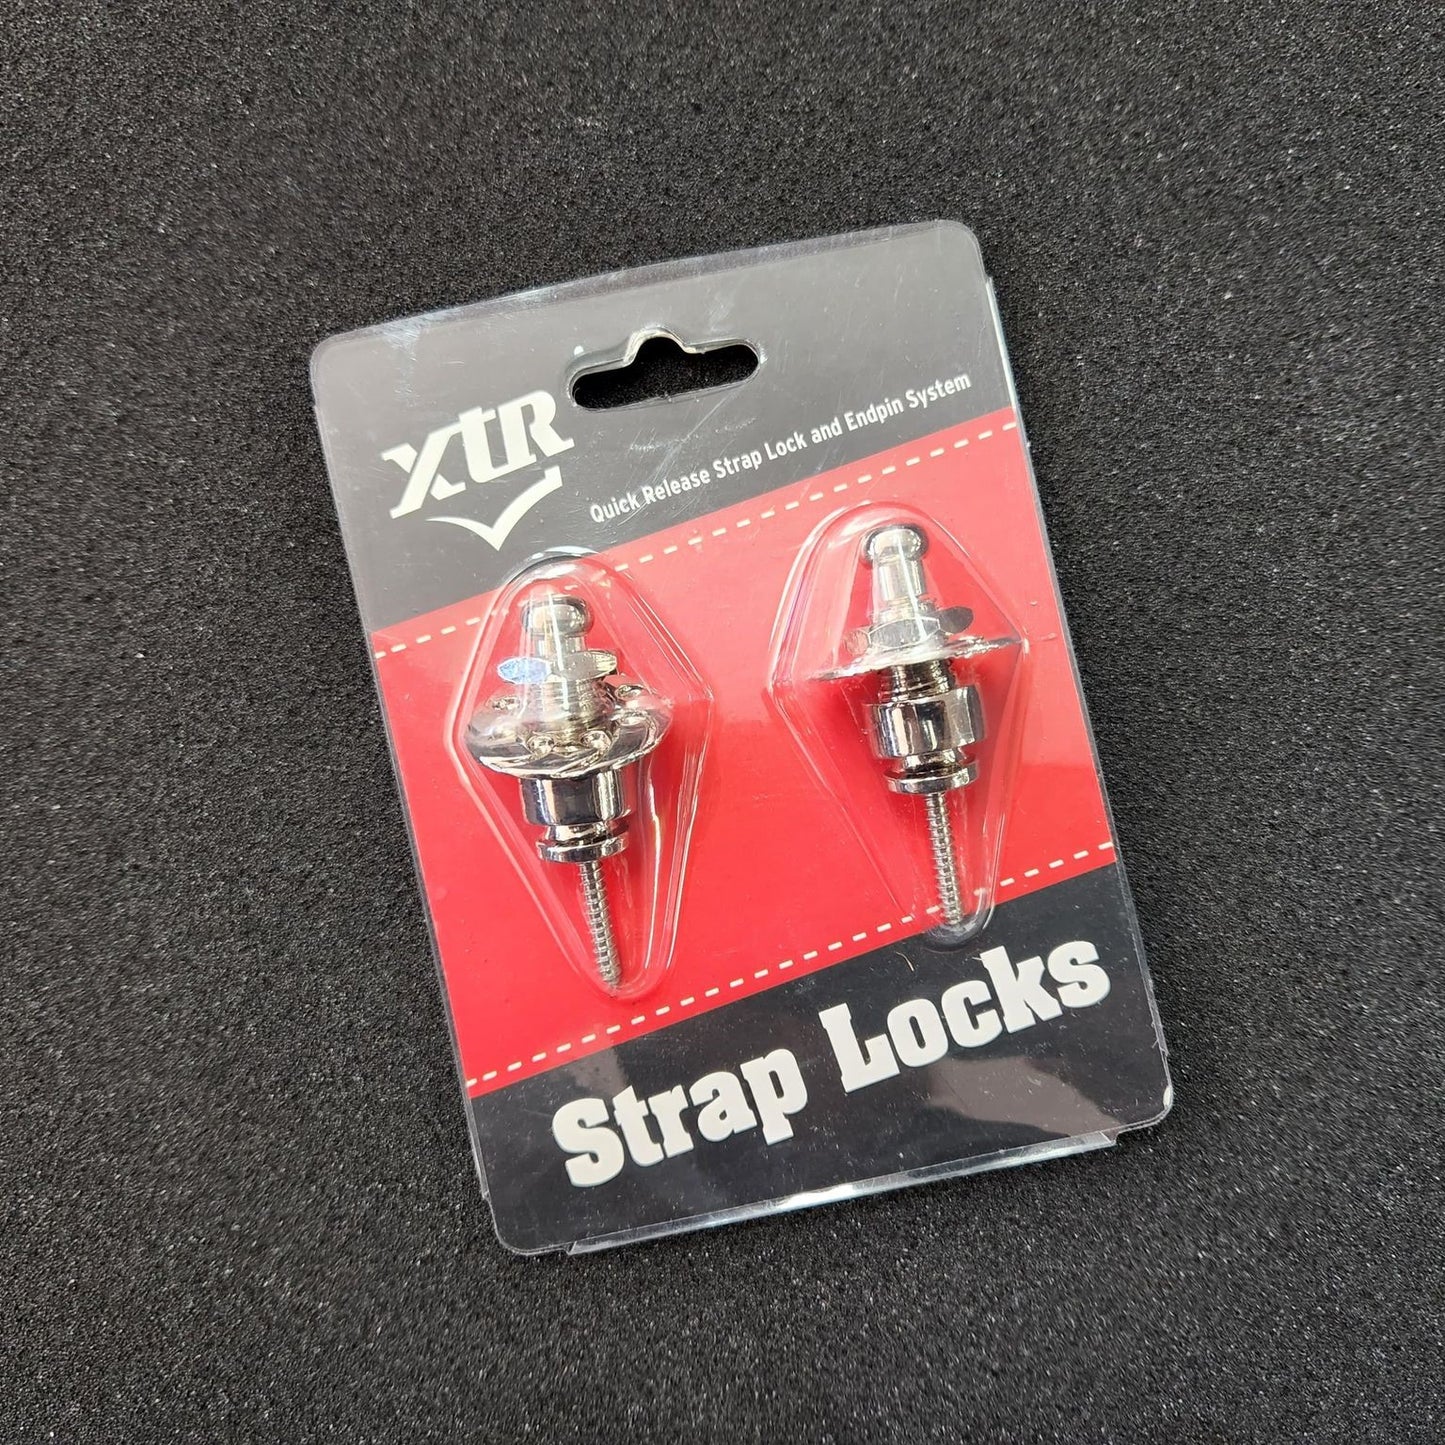 XTR Strap Locks